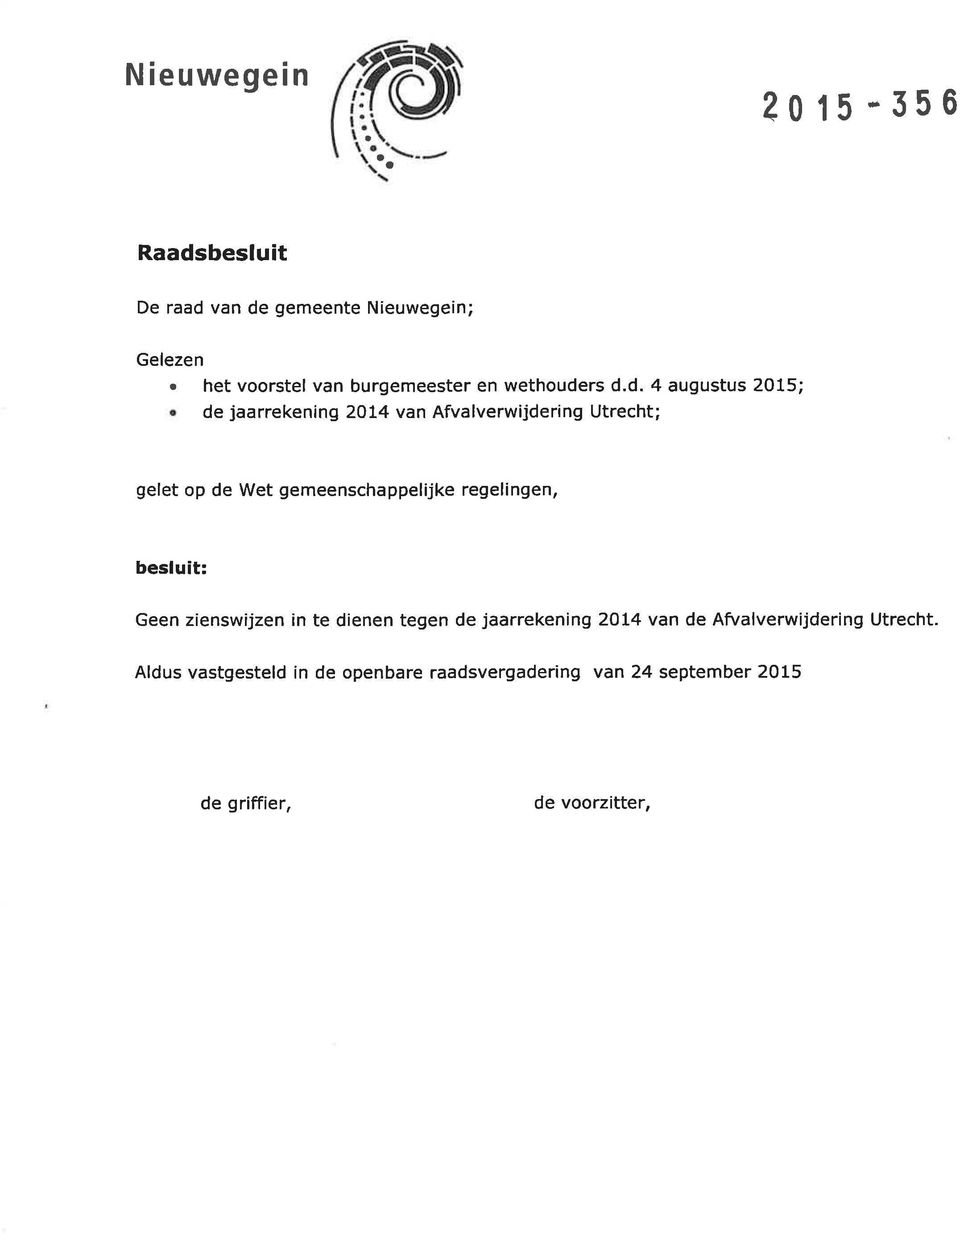 rs d.d. 4 augustus 2015; de jaarrekening 2014 van Afvalverwijdering Utrecht; gelet op de Wet gemeenschappelijke